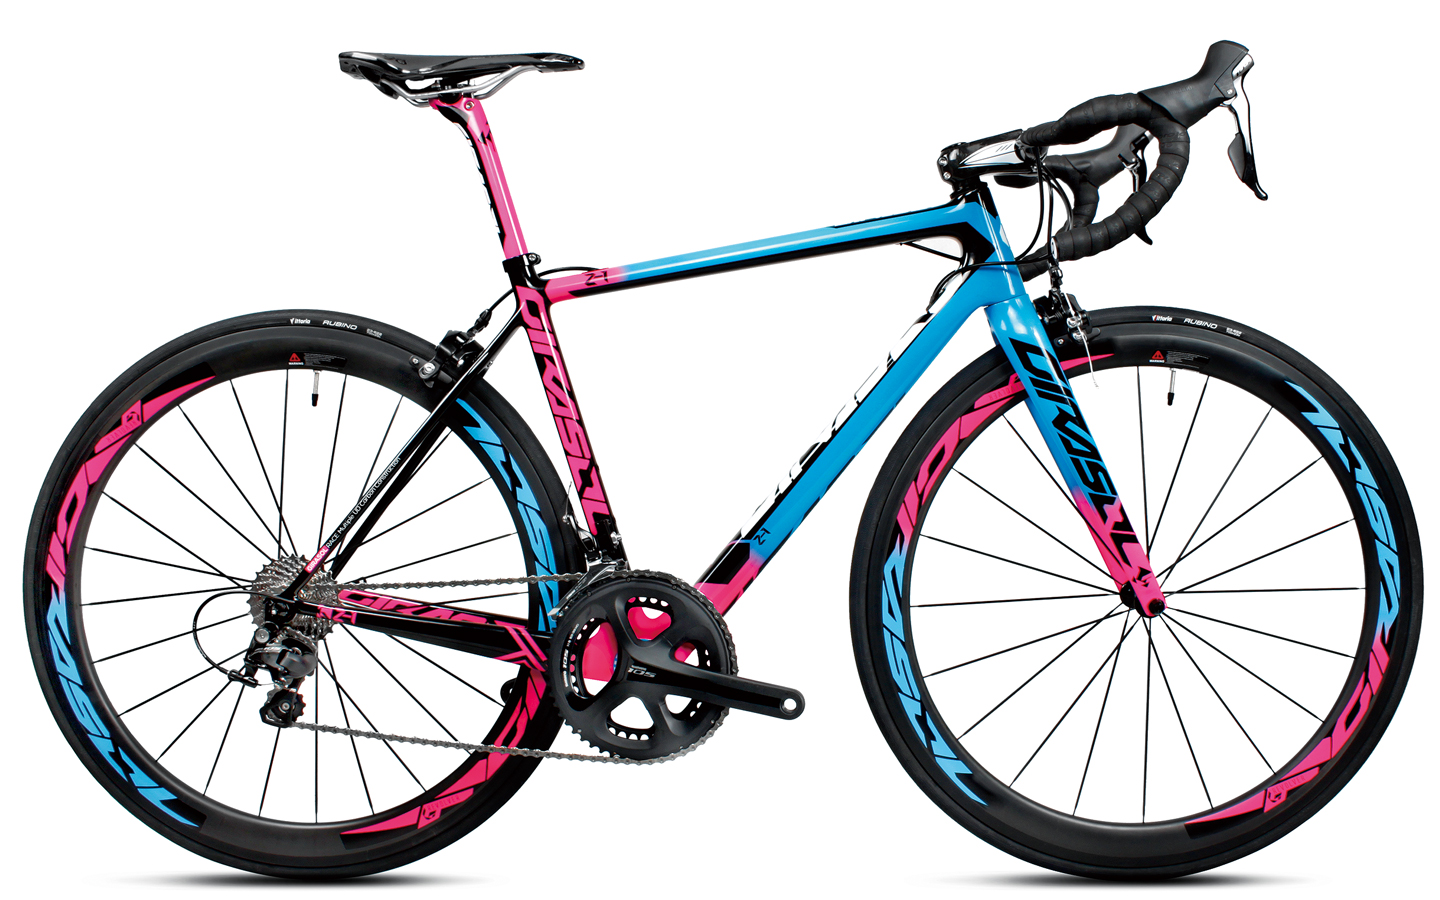 pink and blue bike